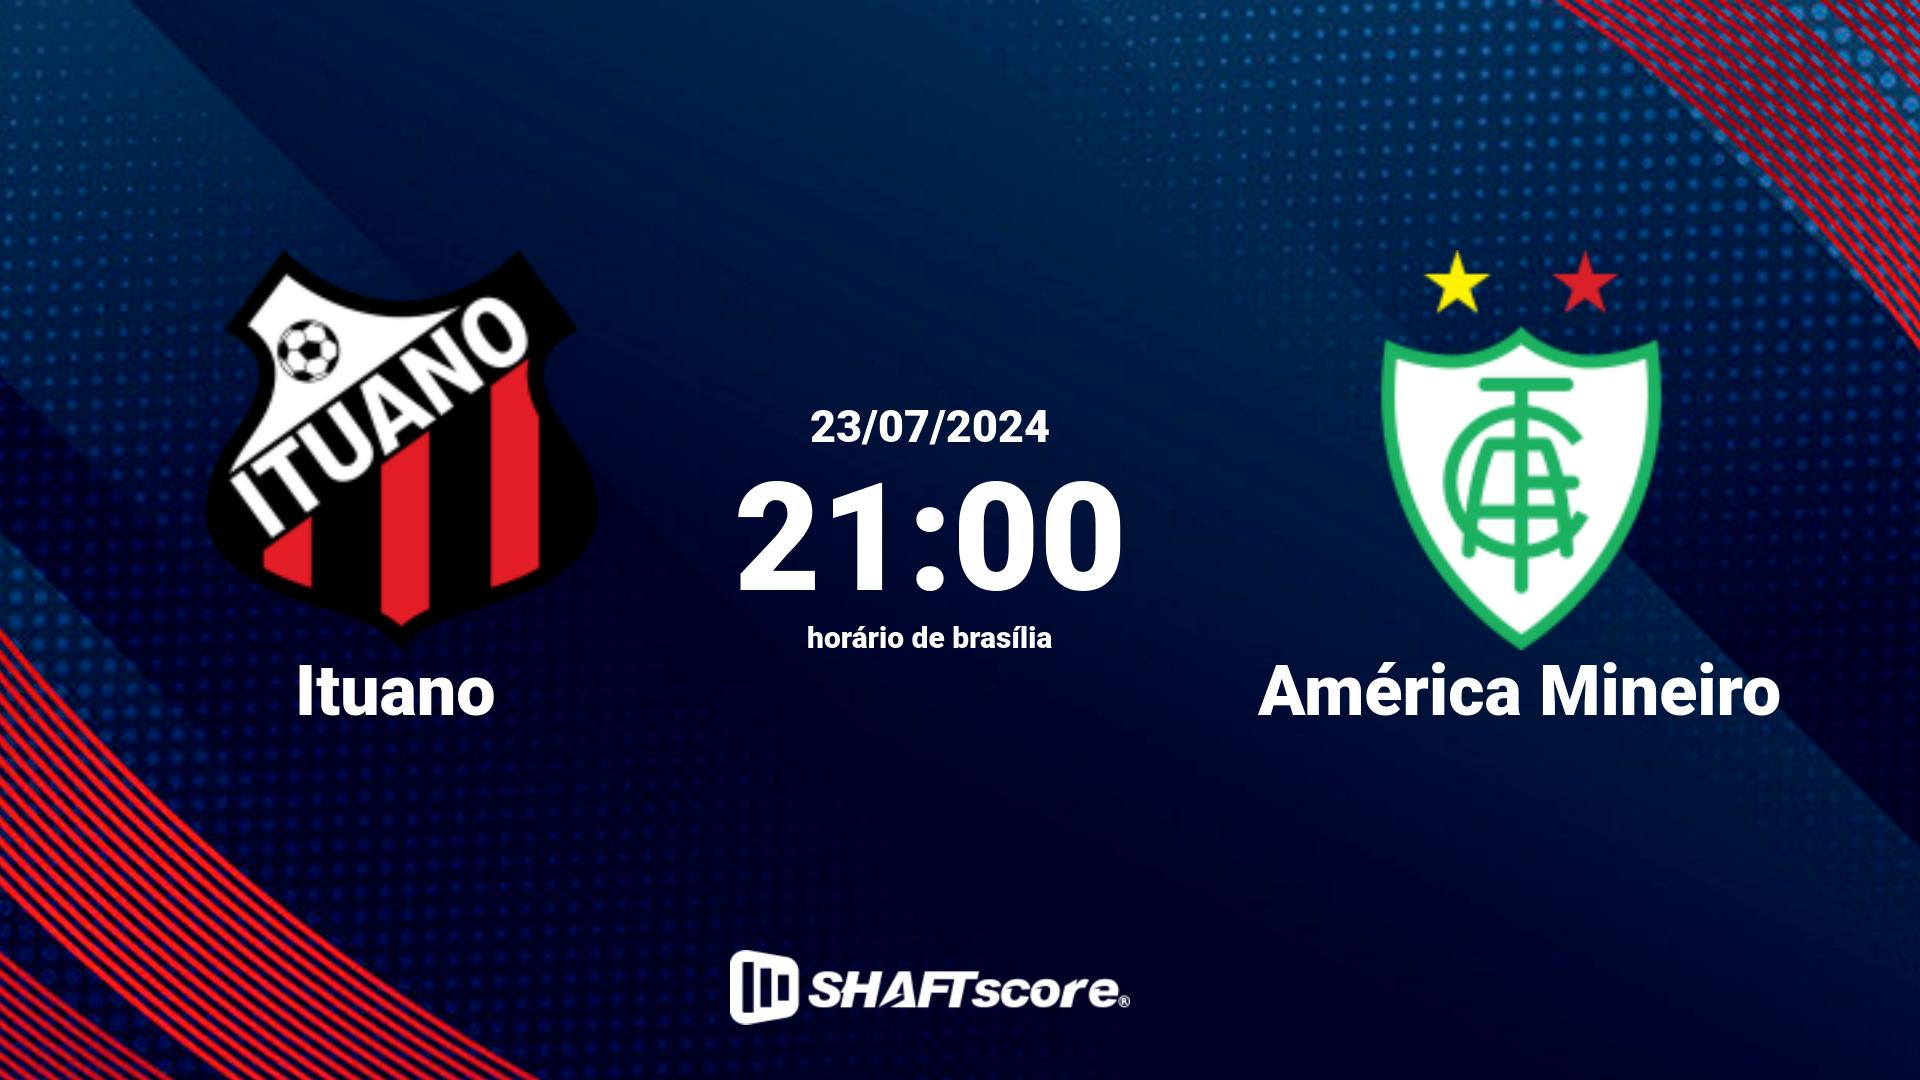 Estatísticas do jogo Ituano vs América Mineiro 23.07 21:00